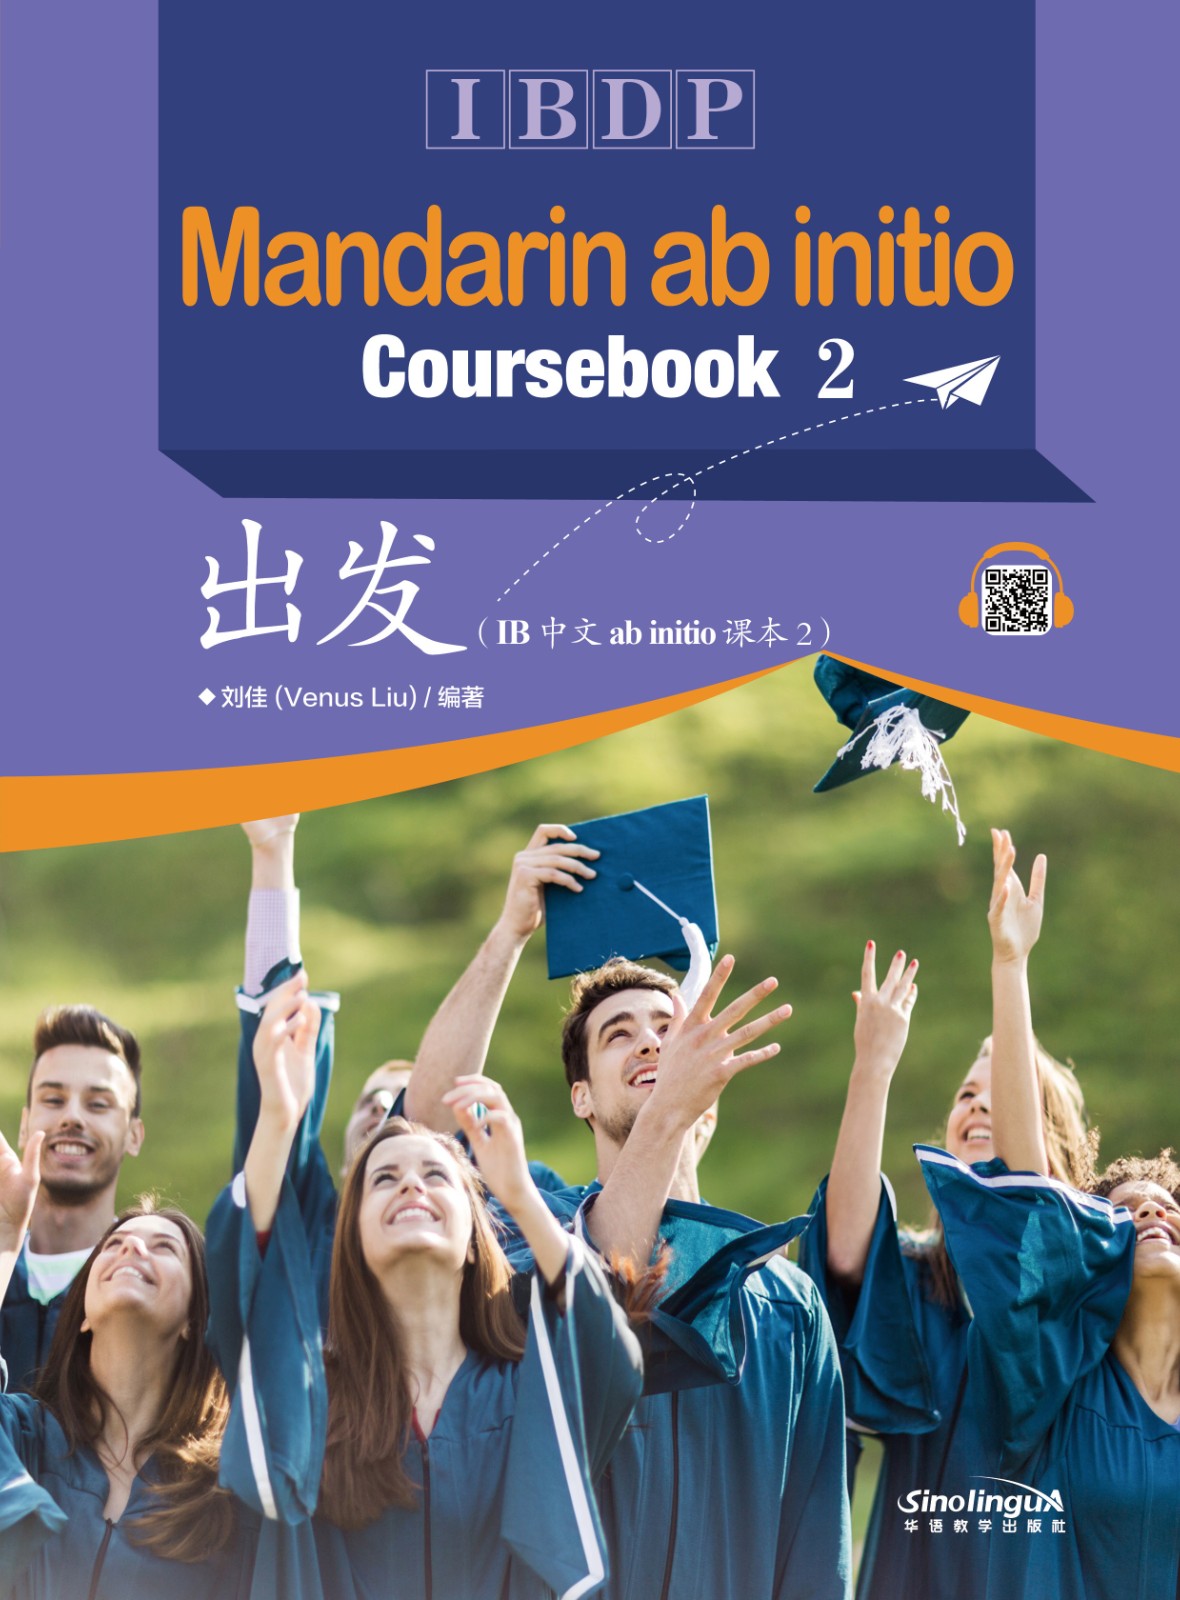 IBDP-Mandarin ab initio Coursebook 2